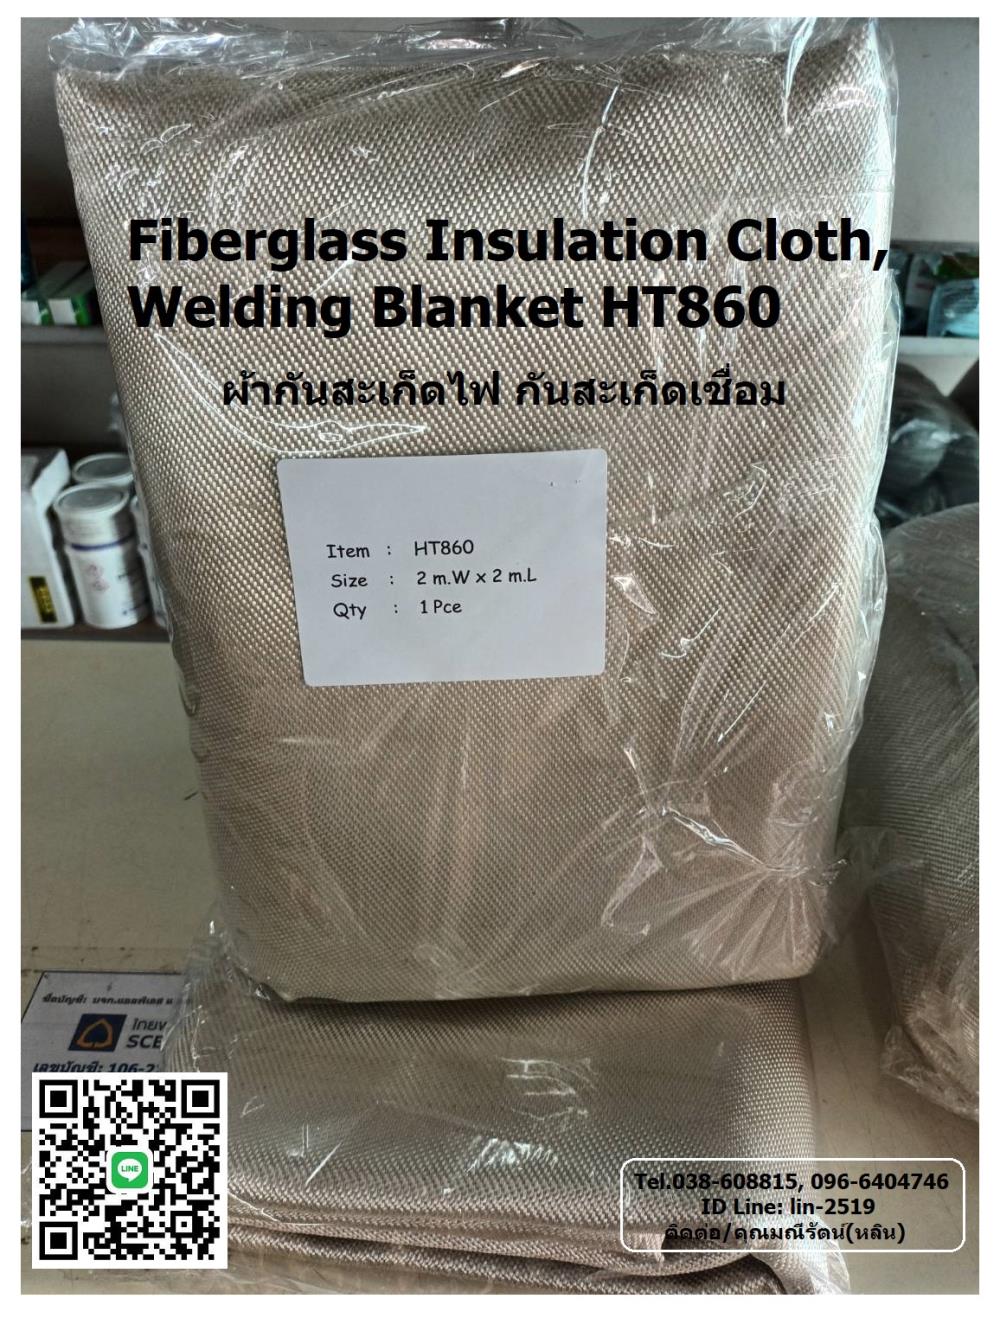 Fiberglass Insulation Cloth, Welding Blanket HT860 ผ้าไฟเบอร์กลาสกันสะเก็ดไฟงานเชื่อม งานตัดเหล็ก และงานหุ้มฉนวนกันความร้อน,Fire Blanket, Insulation Cloth, Welding Blanket, HT860, ผ้ากันไฟ, ผ้าห่มกันไฟ, ผ้าคลุมดับไฟในวงแคบ, ผ้าคลุมไฟในโรงแรม, ผ้าคลุมไฟ, ผ้ากันสะเก็ดงานเชื่อม, กันความร้อน, ,Fire Blanket,Industrial Services/Repair and Maintenance